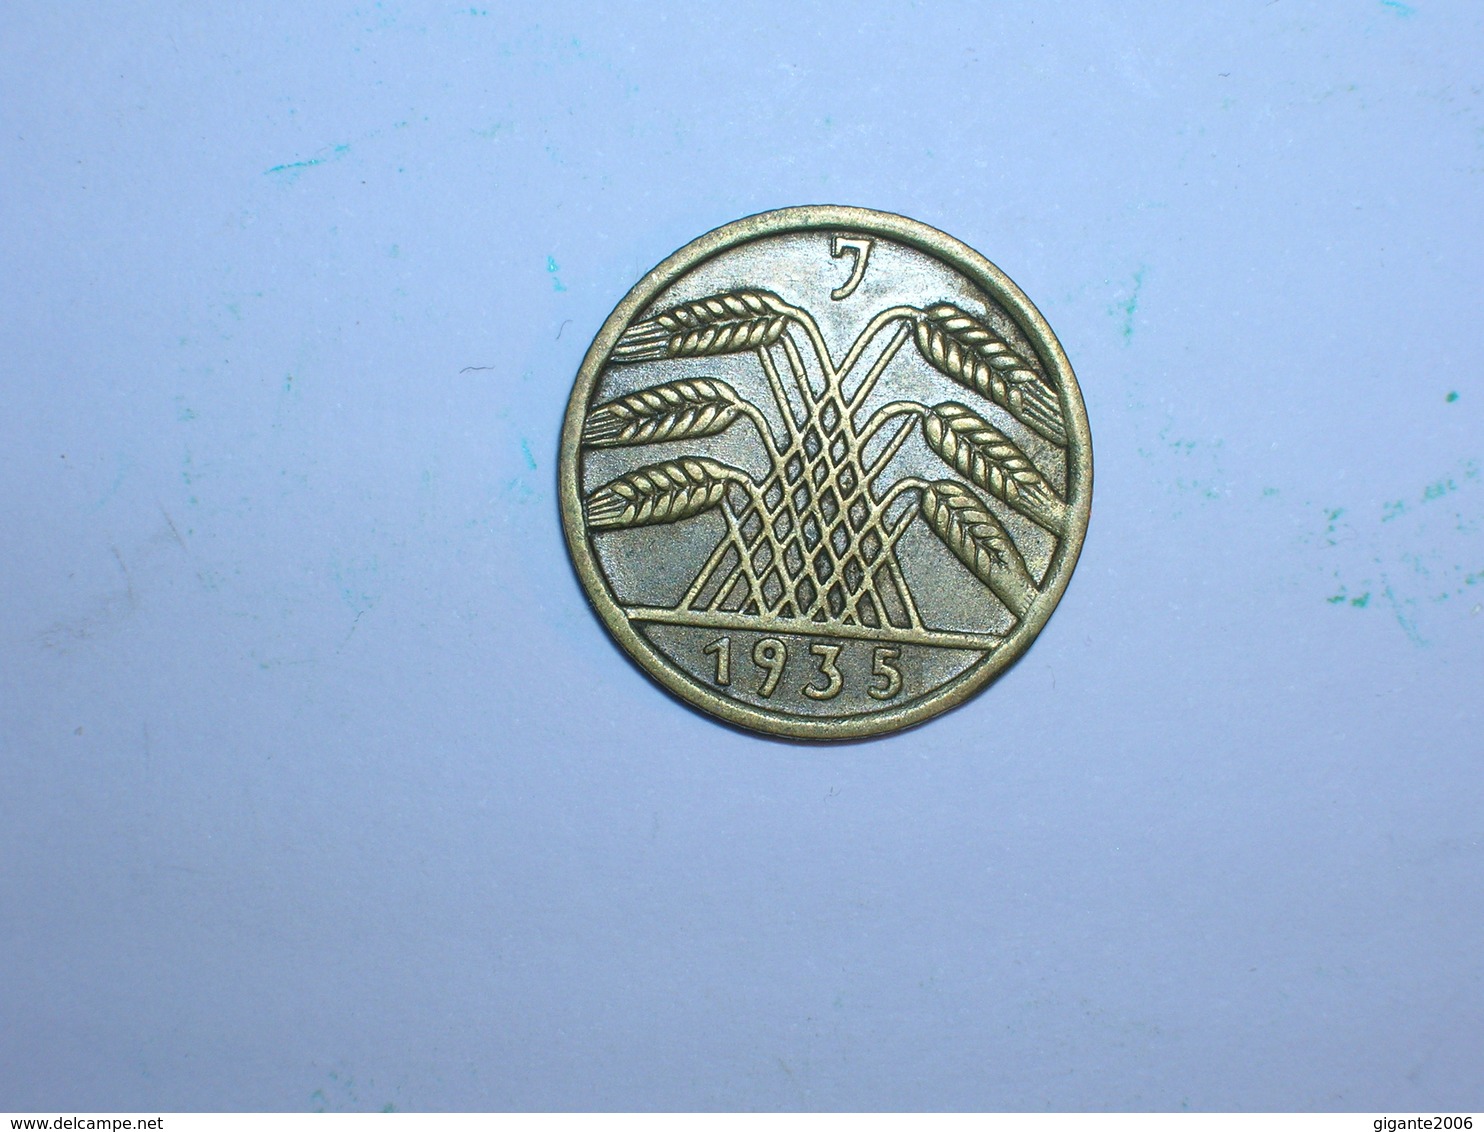 ALEMANIA 5 REICHSPFENNIG 1935 J (1350) - 5 Reichspfennig